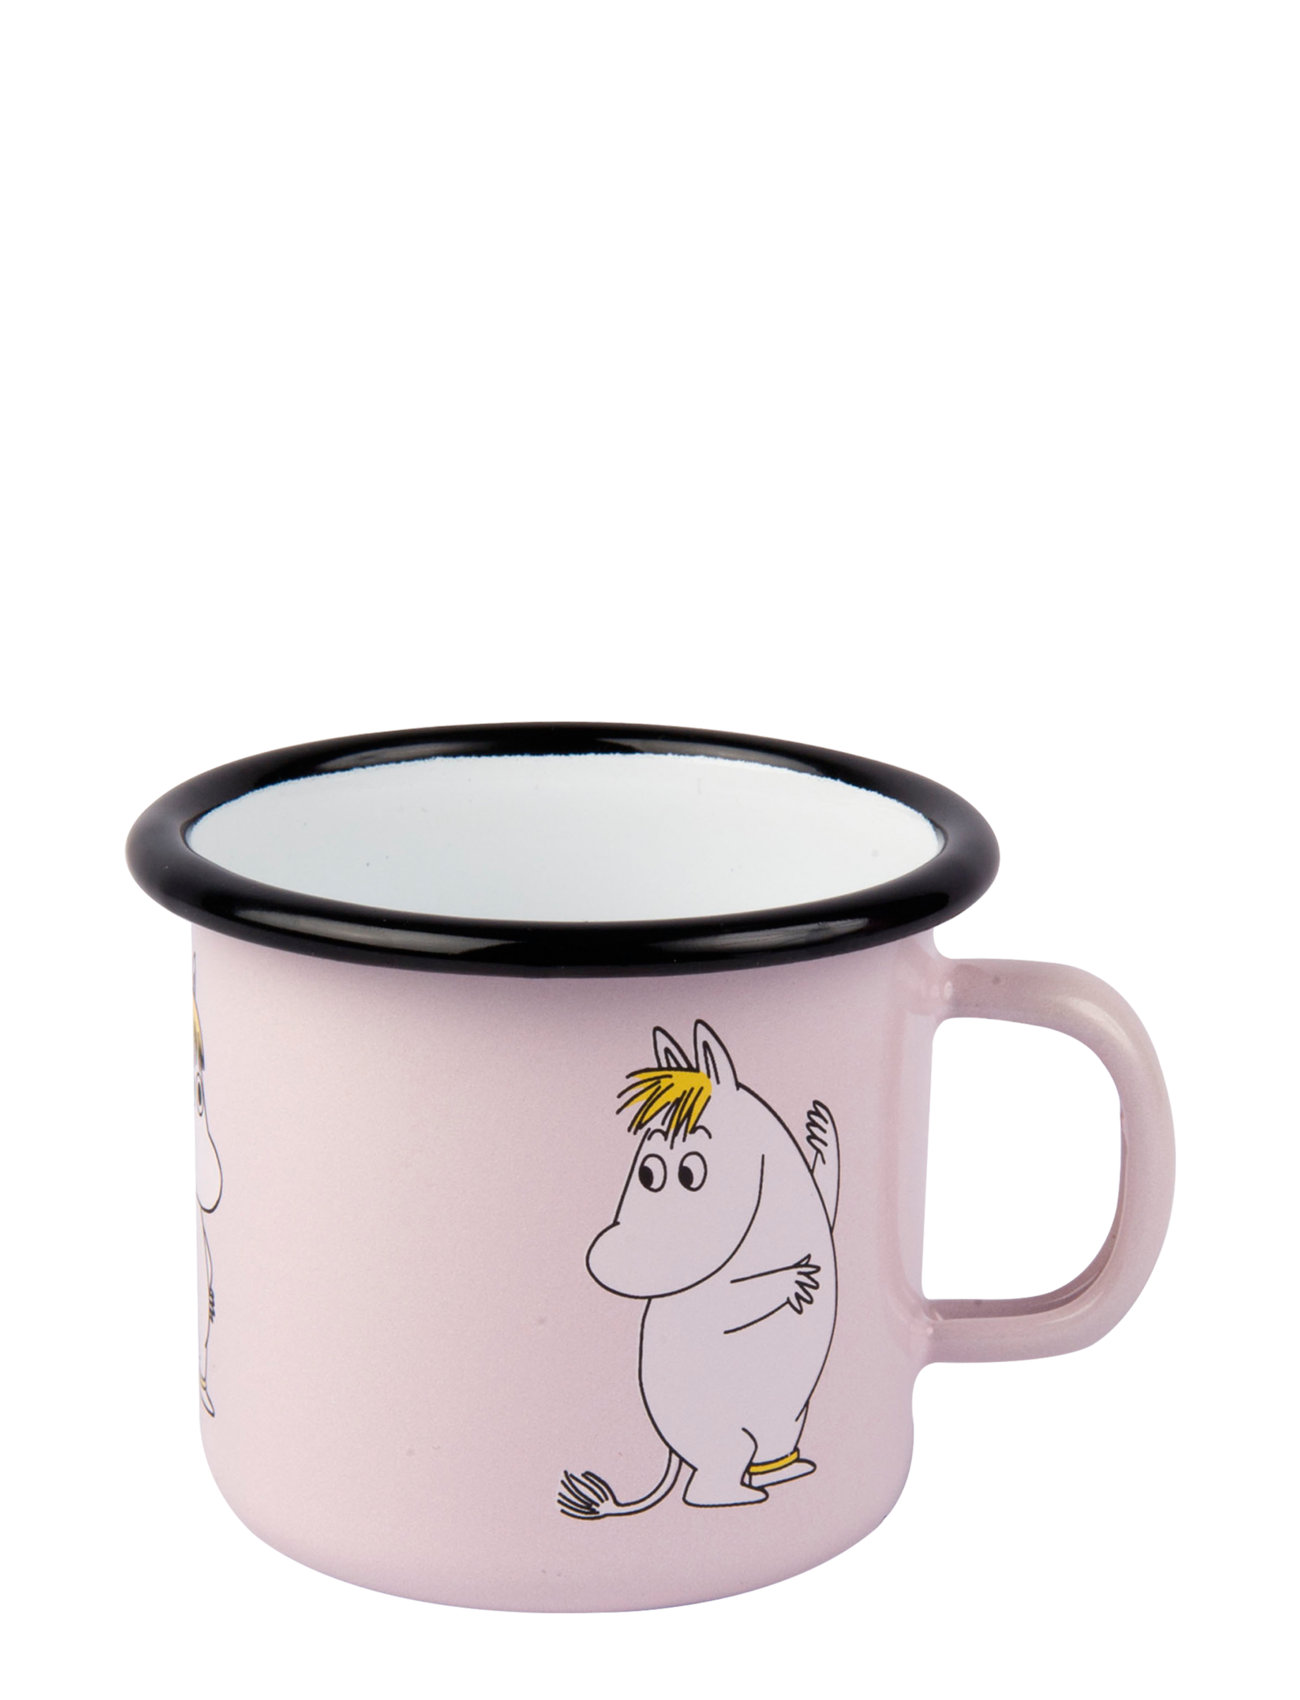 Moomin Enamel Mug 25Cl Snorkmaiden Home Tableware Cups & Mugs Coffee Cups Pink Moomin